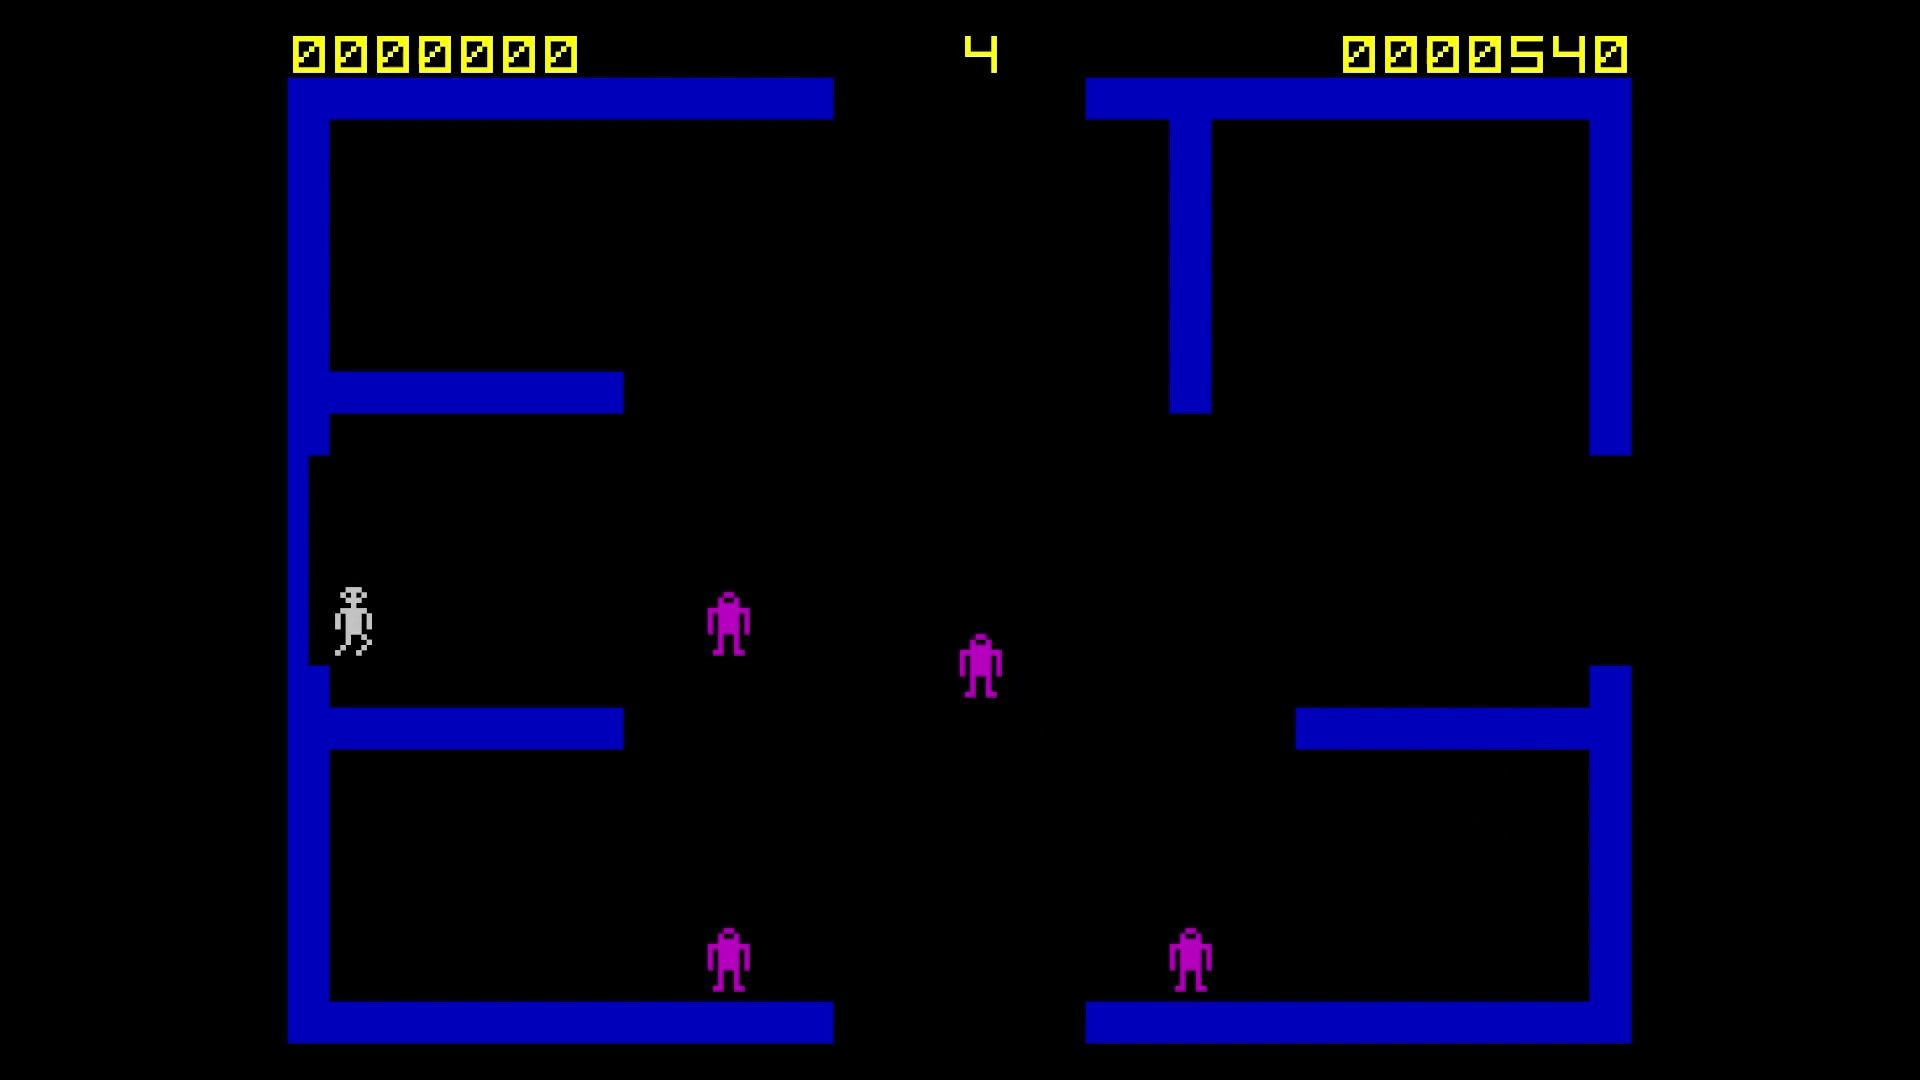 Personnage pixélisé dans un labyrinthe dans le jeu frenzy en 1982